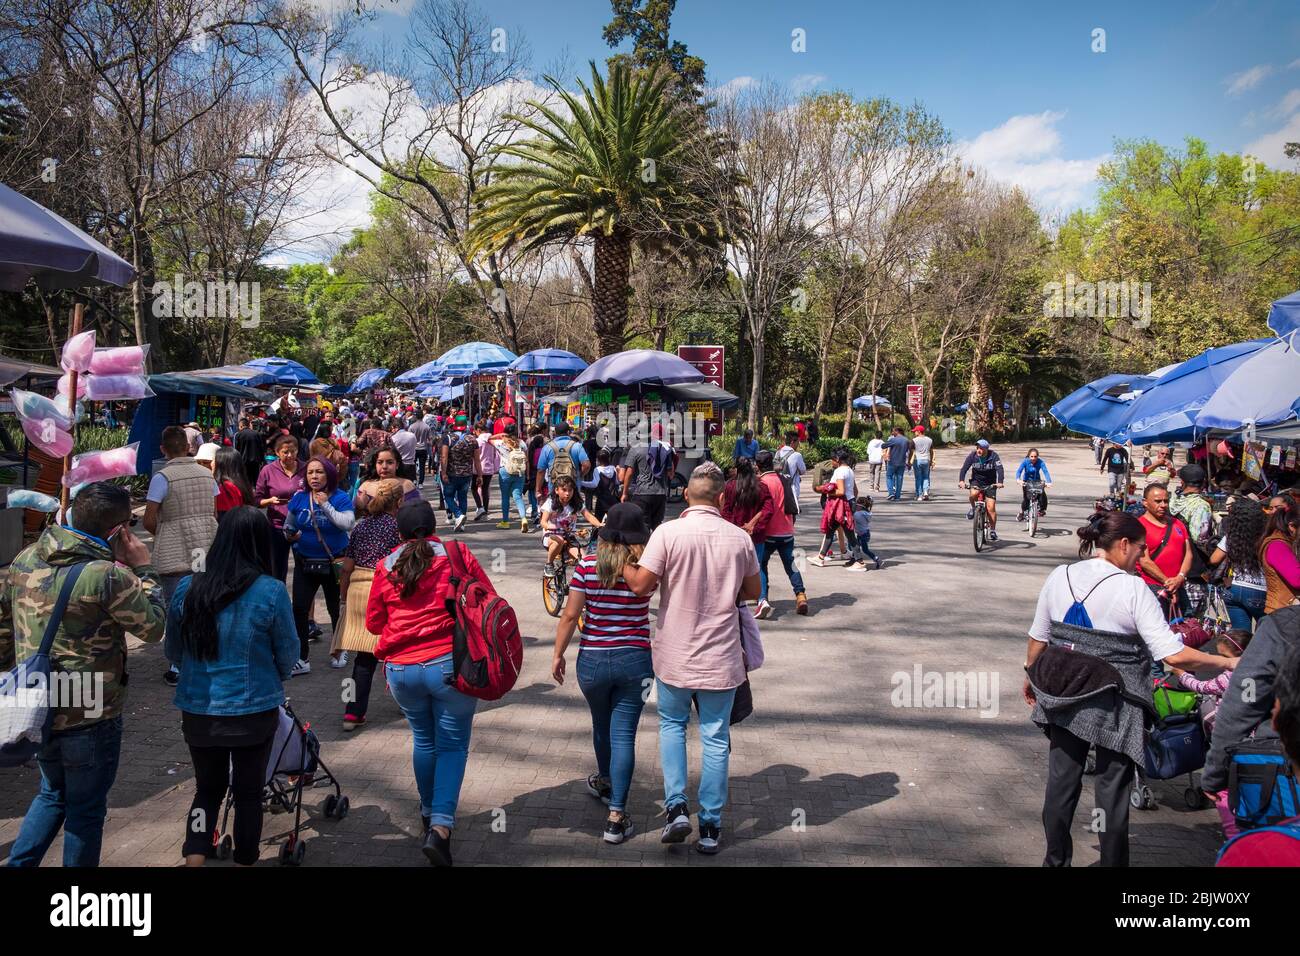 Multitudes en el Parque Chapultepec un fin de semana, Ciudad de México, México Foto de stock